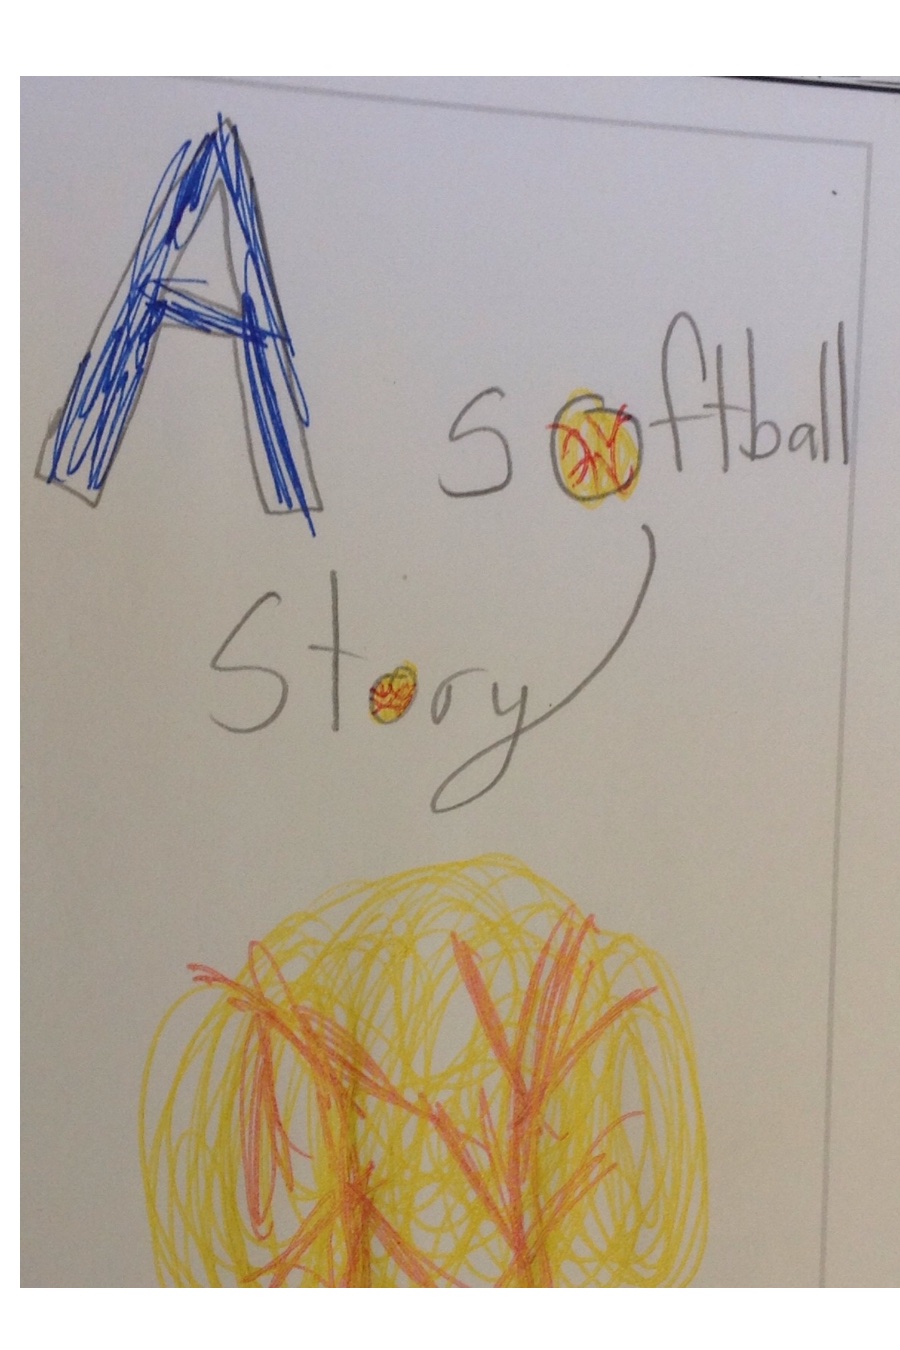 A Softball Story by Kayla L